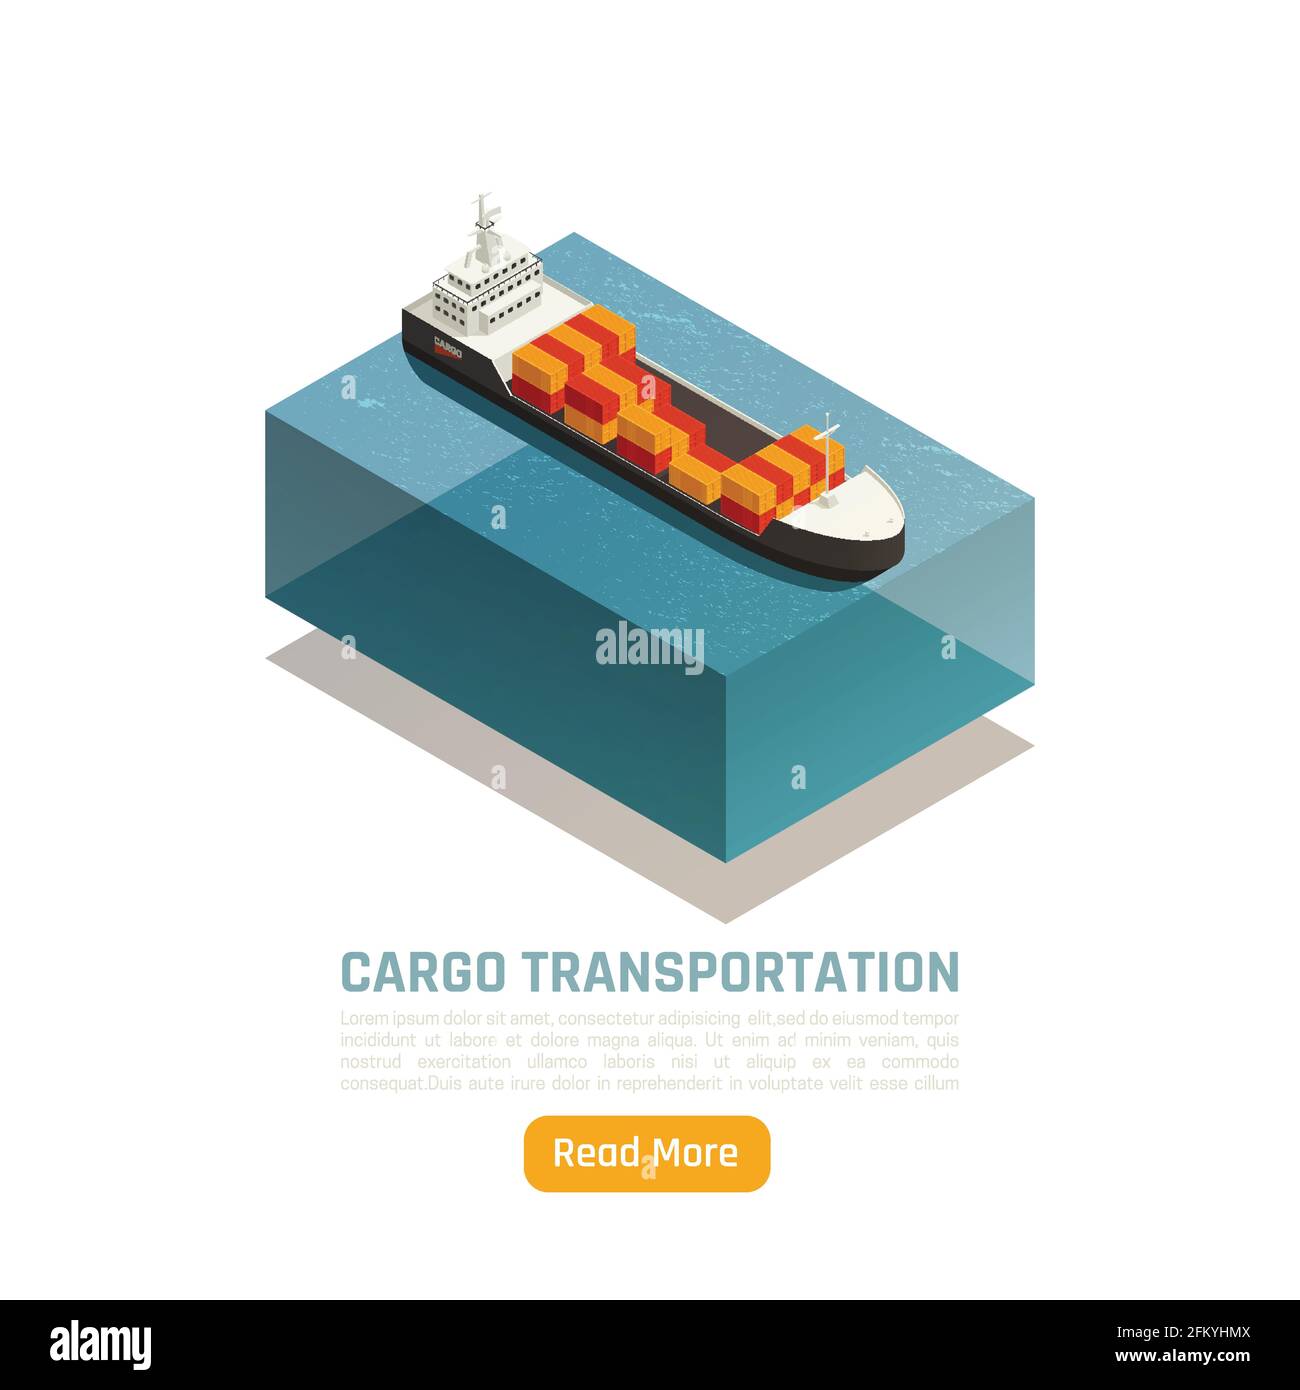 Transport logistische Lieferung isometrischer Hintergrund mit Bild des Schiffes Mit Frachtcontainern und Textvektordarstellung beladen Stock Vektor